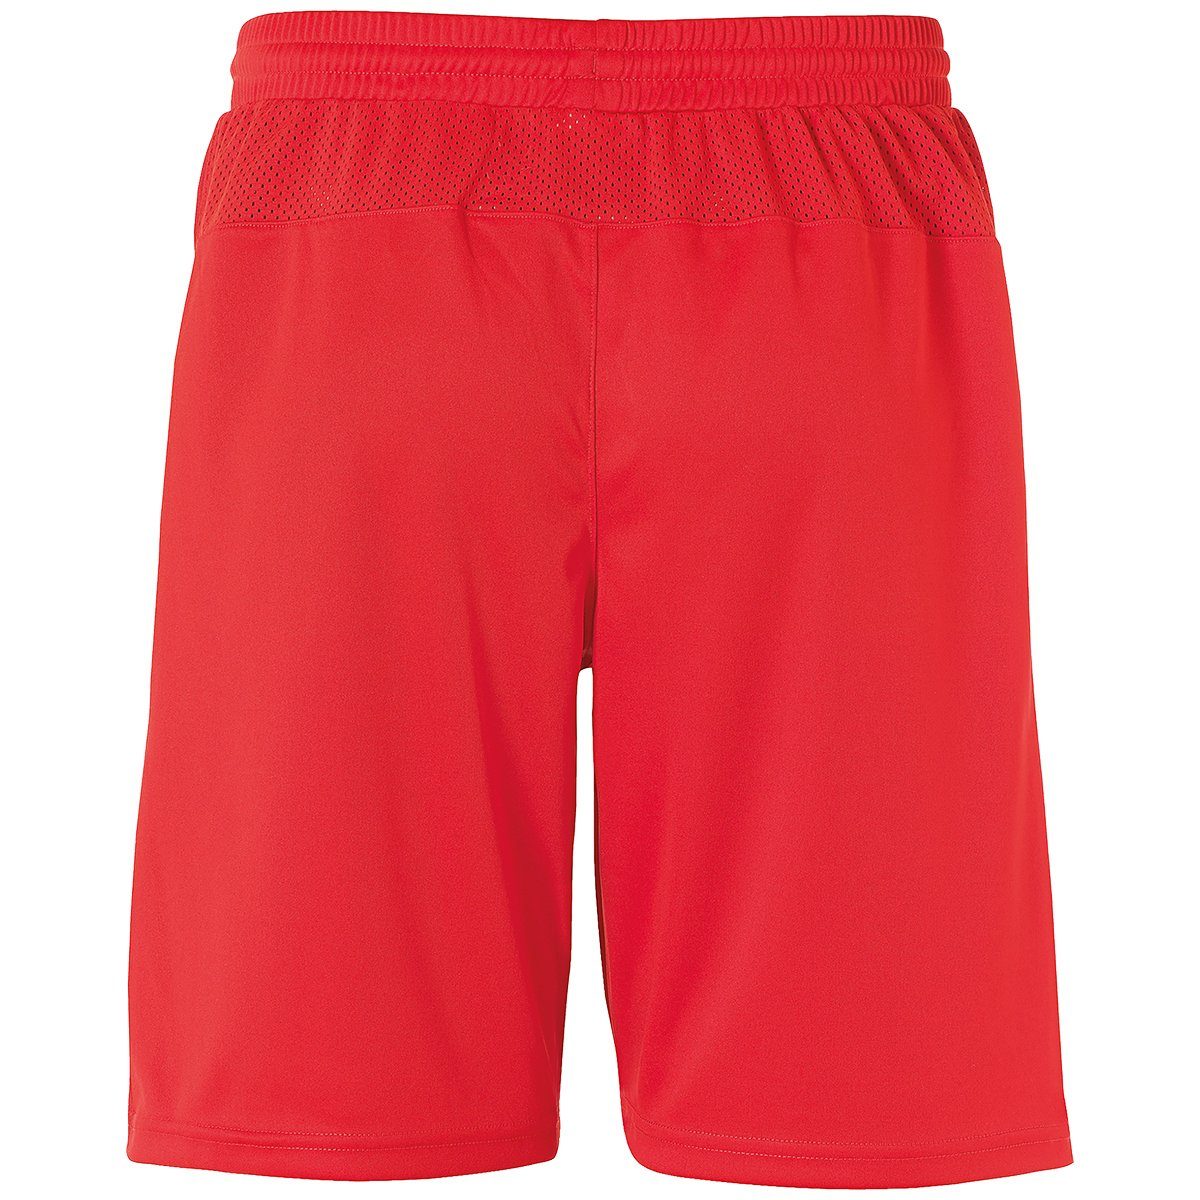 uhlsport PERFORMANCE rot/weiß Shorts Shorts uhlsport SHORTS